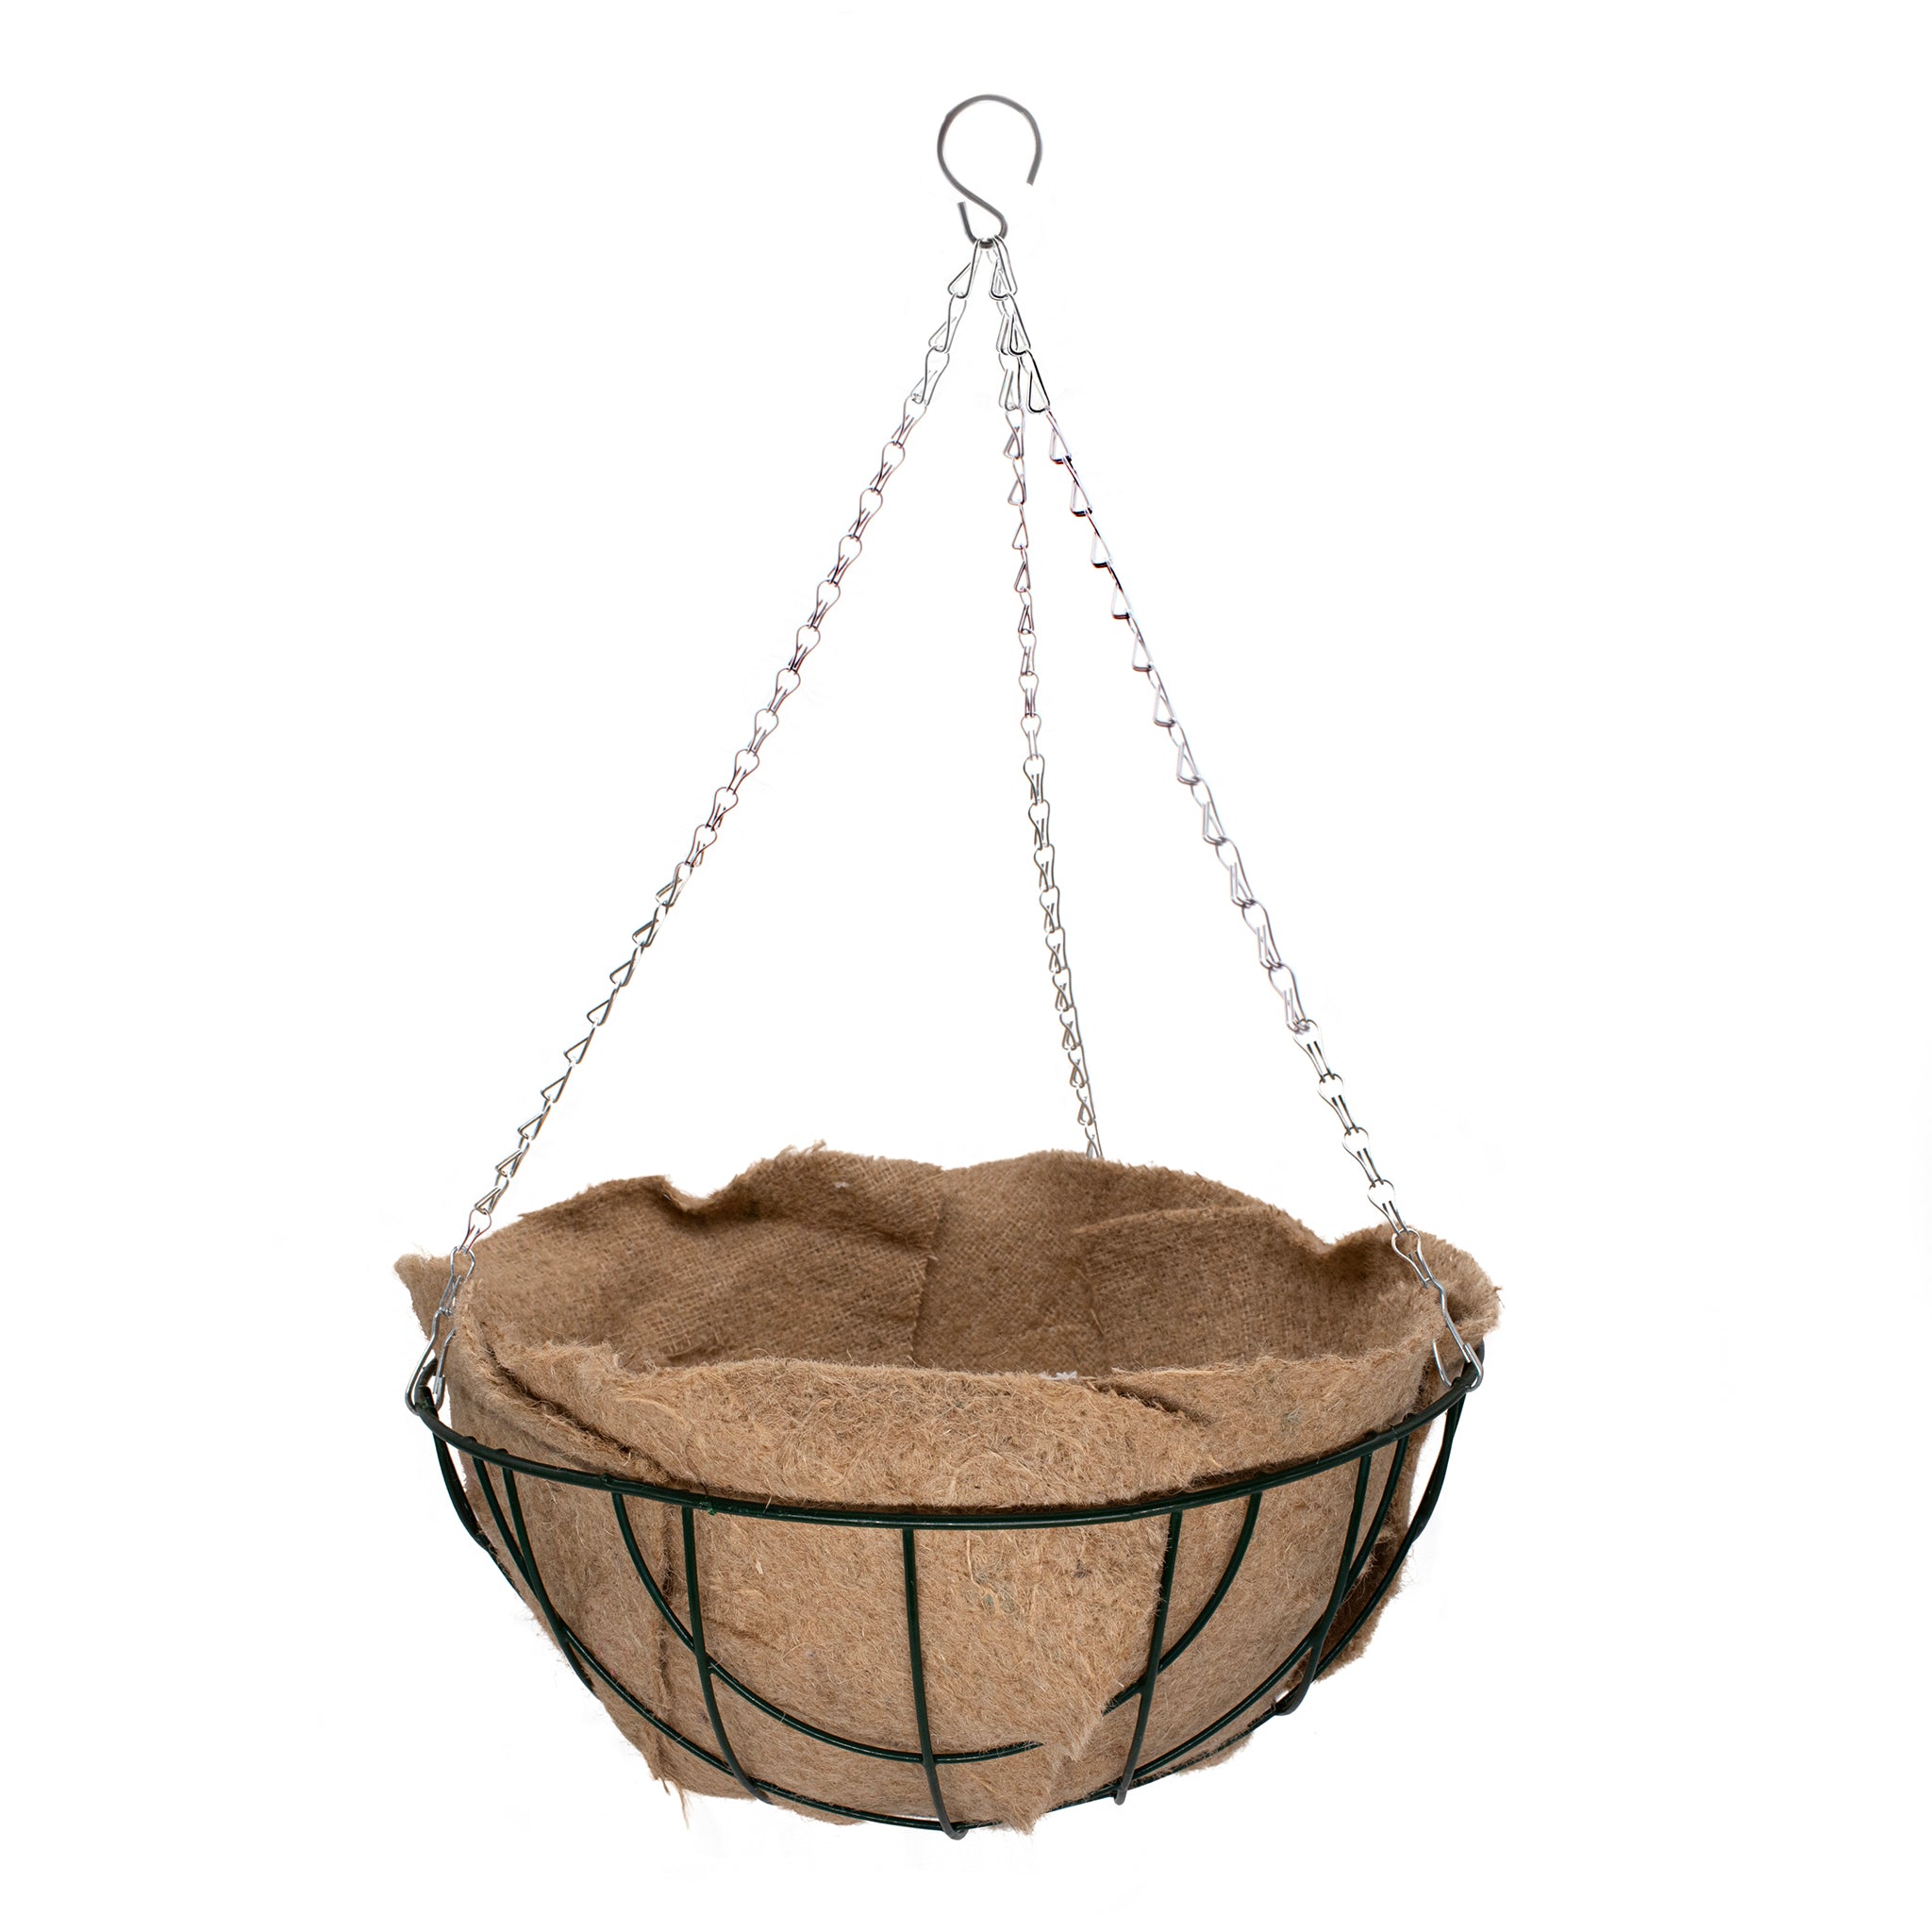 medium metal hanging basket with jute hanging basket liner